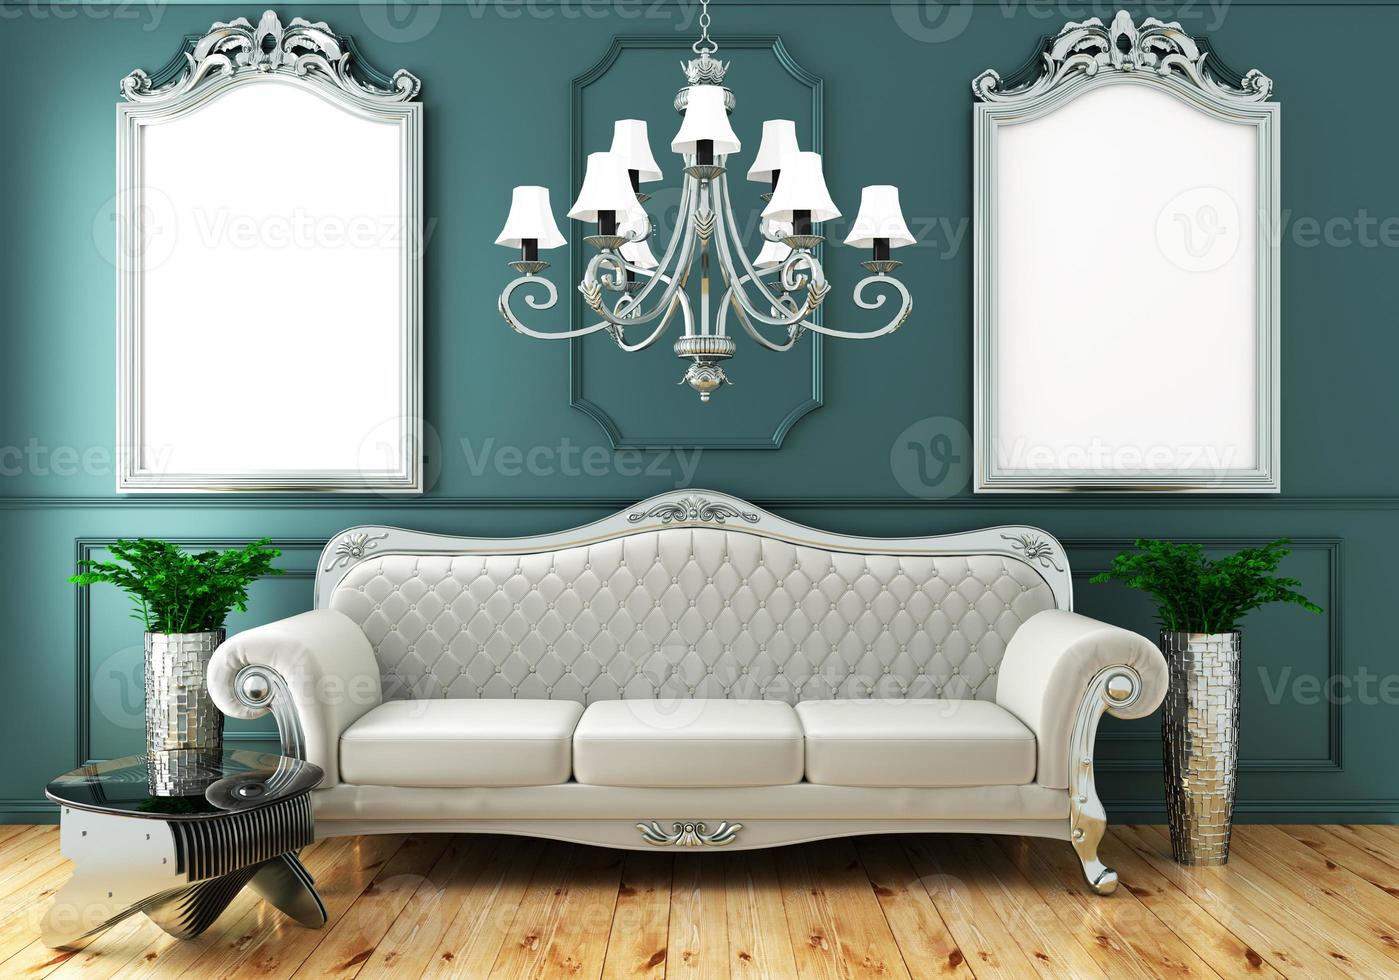 Estilo clásico de lujo de vida interior, decoración de pared de menta verde sobre piso de madera, representación 3d foto